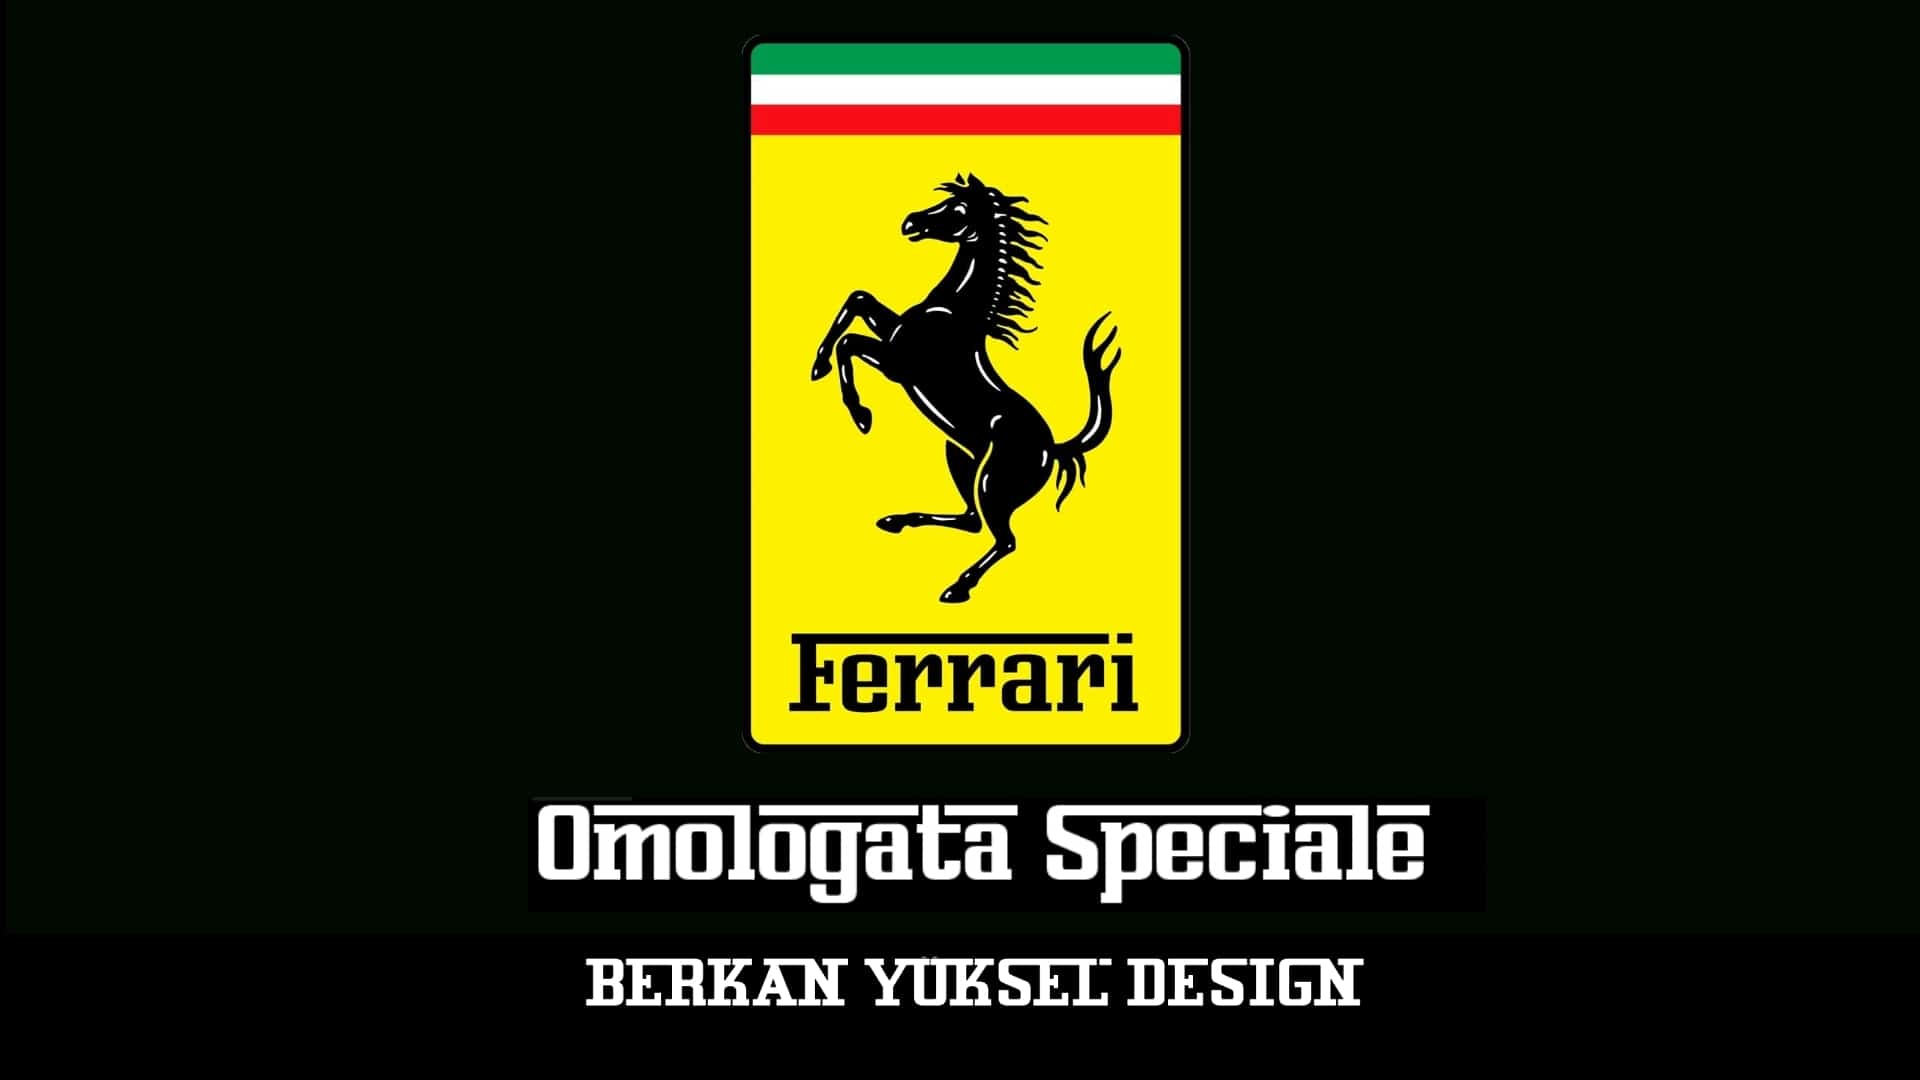 The brand new Ferrari Omologata Speciale Desig